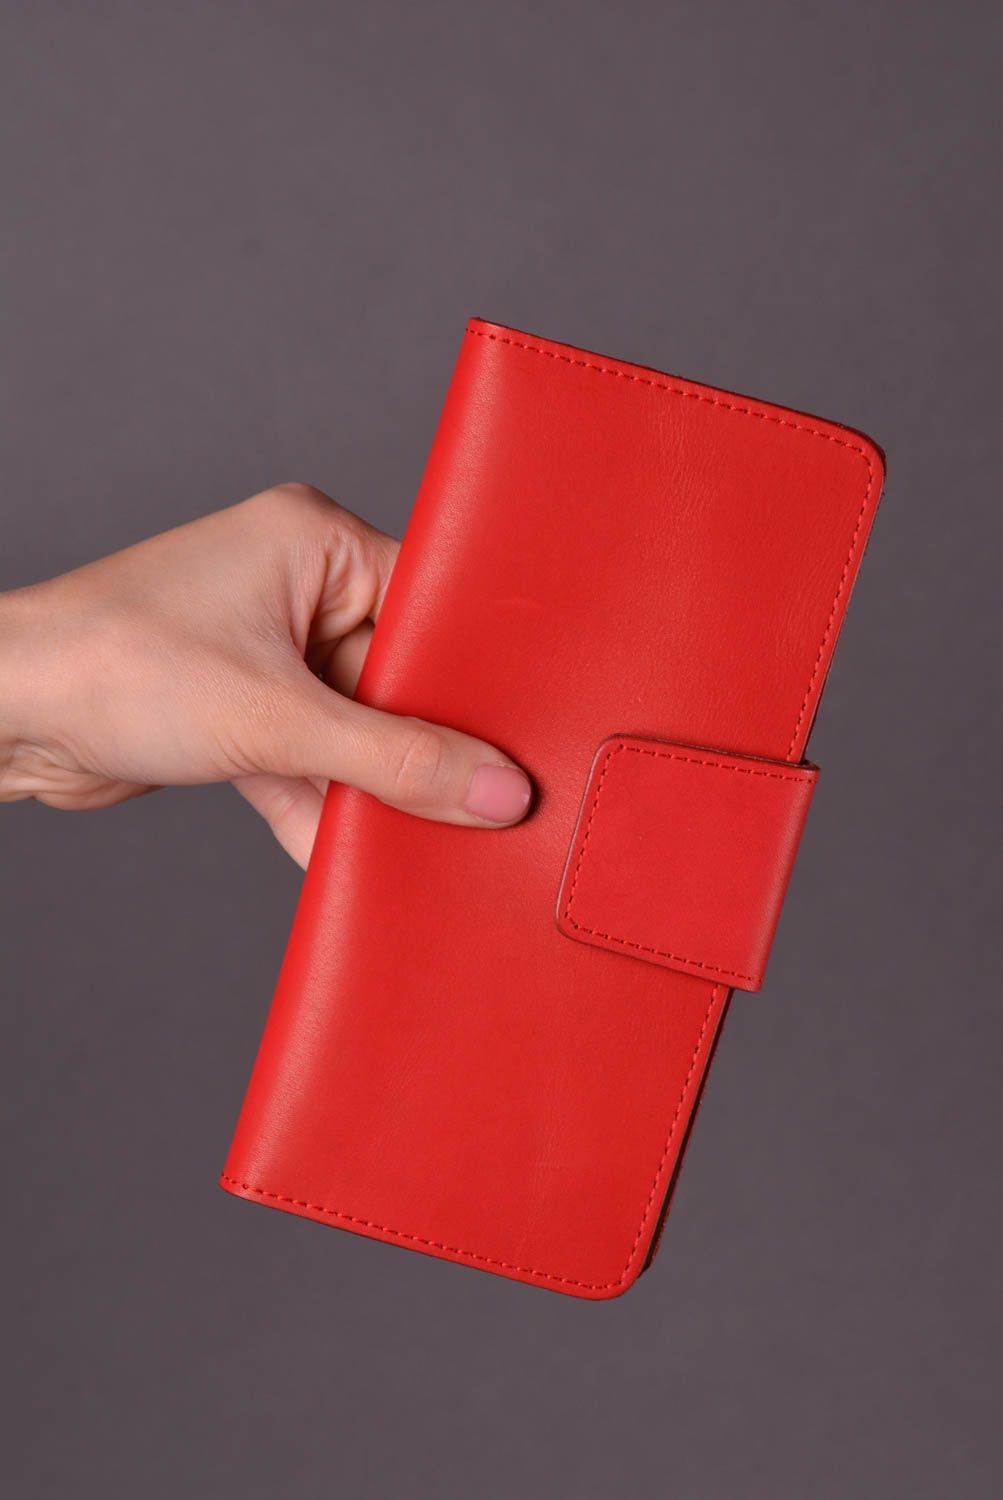 Кошелек ручной работы кожаный кошелек красного цвета подарок женщине длинный фото 1